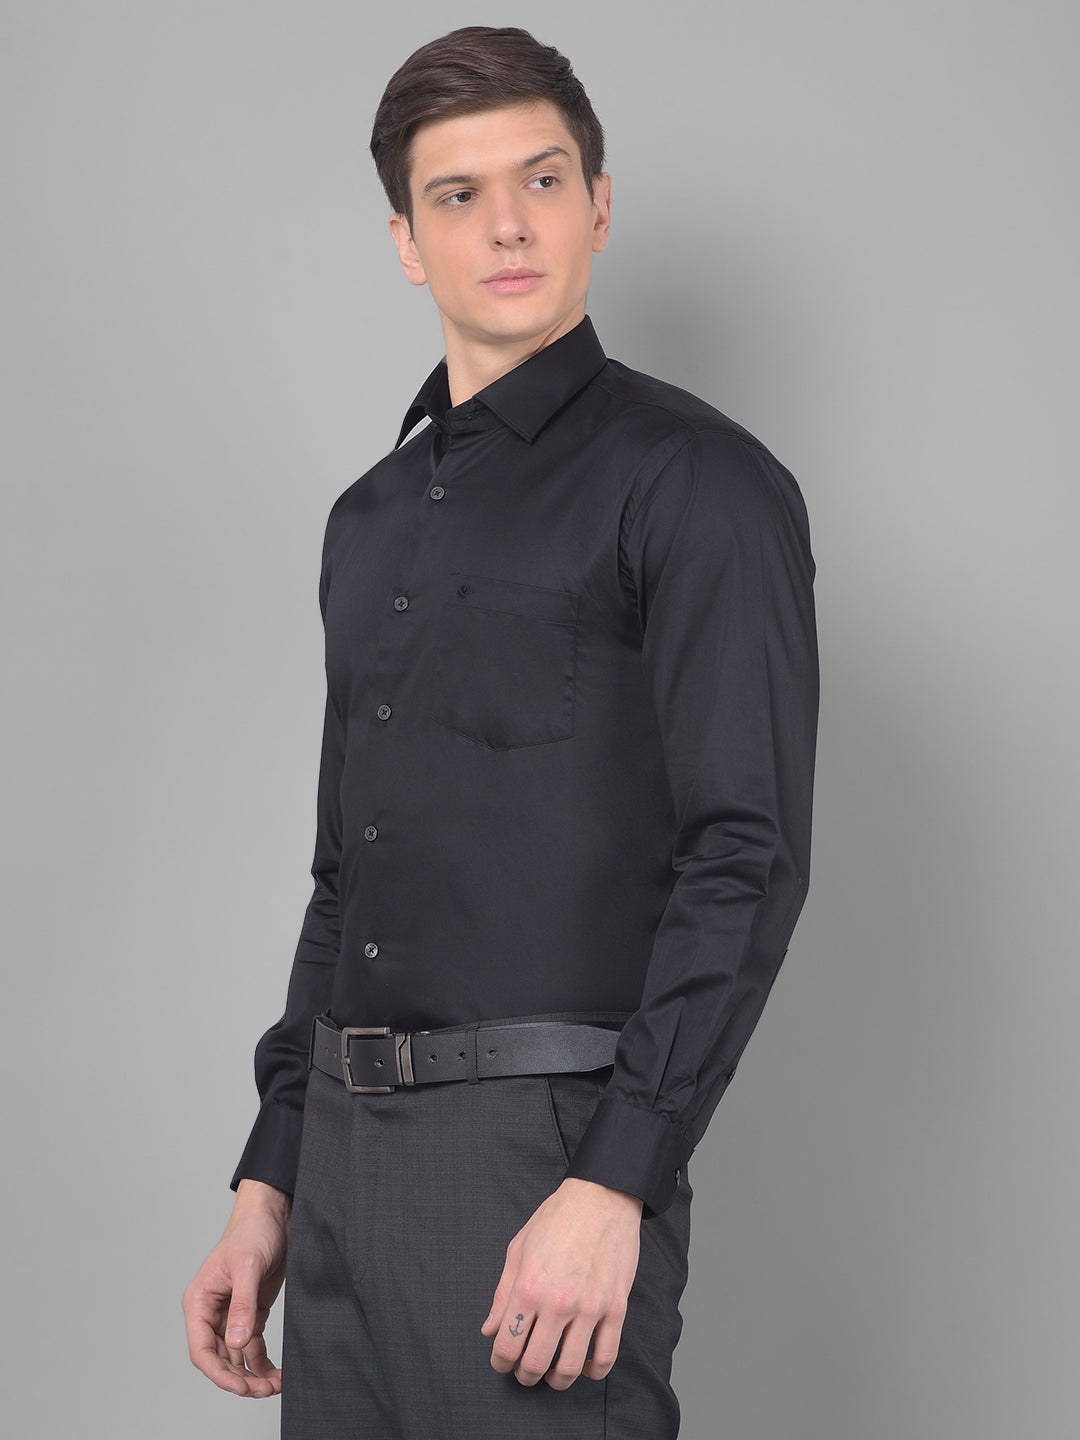 cobb solid black smart fit formal shirt